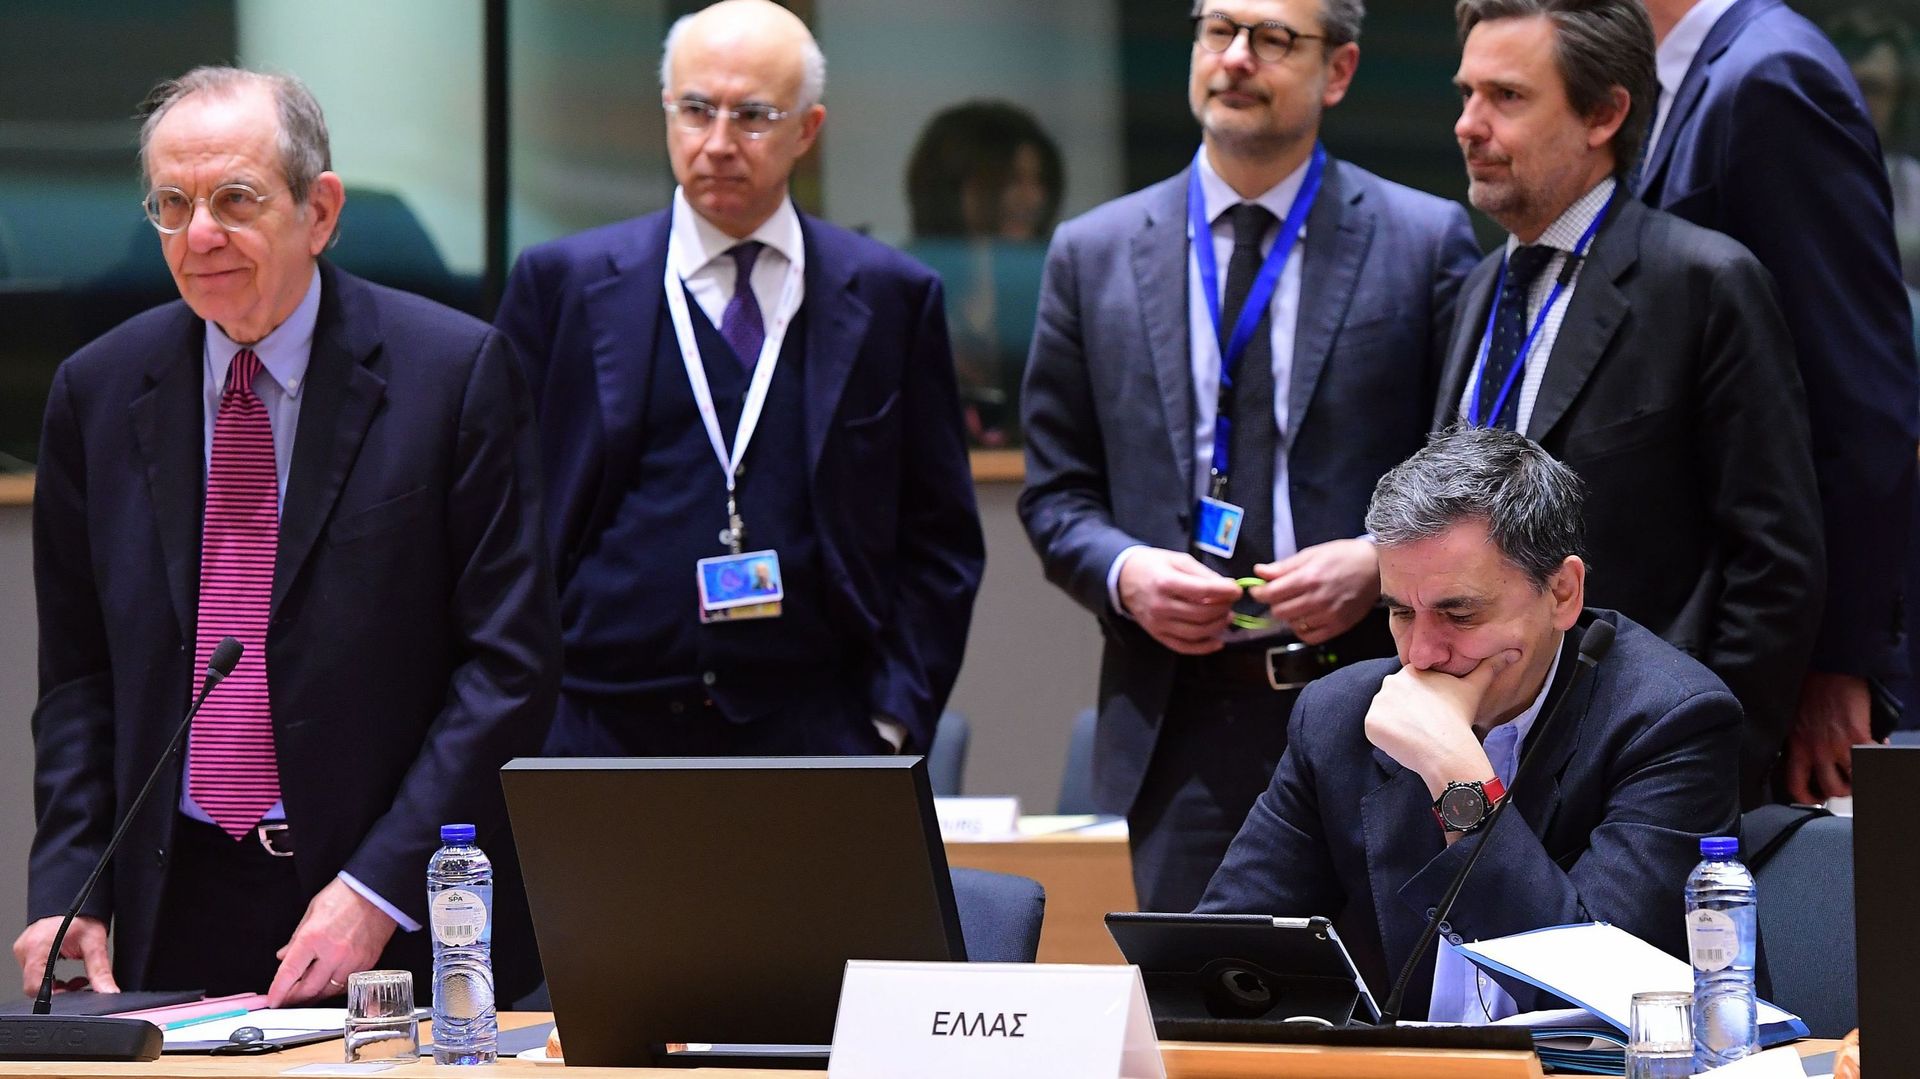 Union Européenne: fin de négociations sans avancée sur la dette grecque